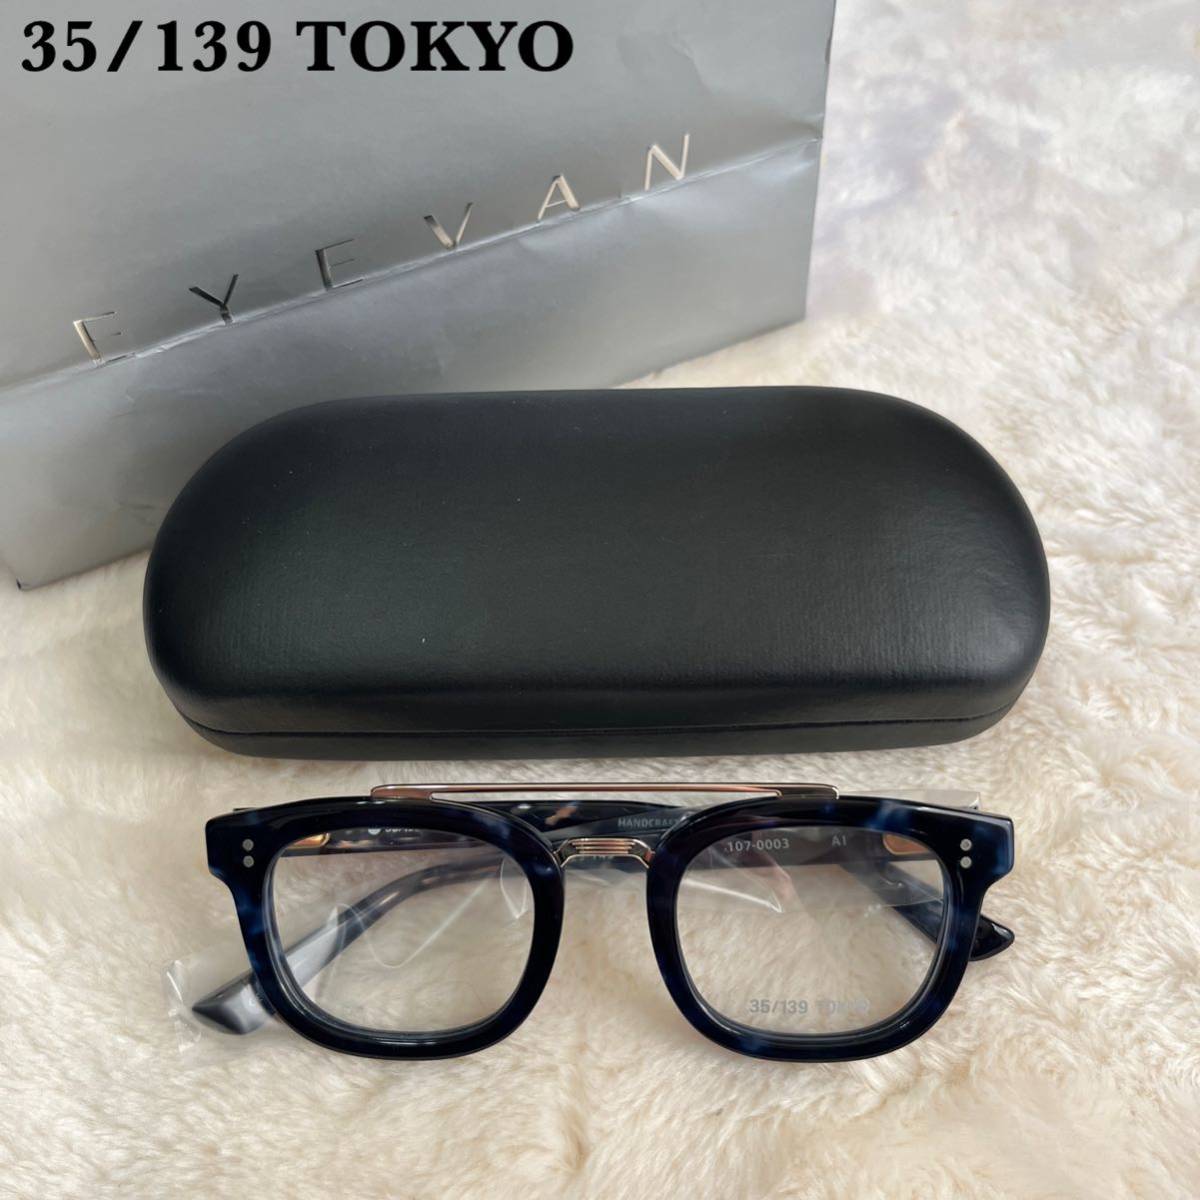 【新品】定価3.3万 35/139TOKYO 眼鏡 107-0003 AI_画像1